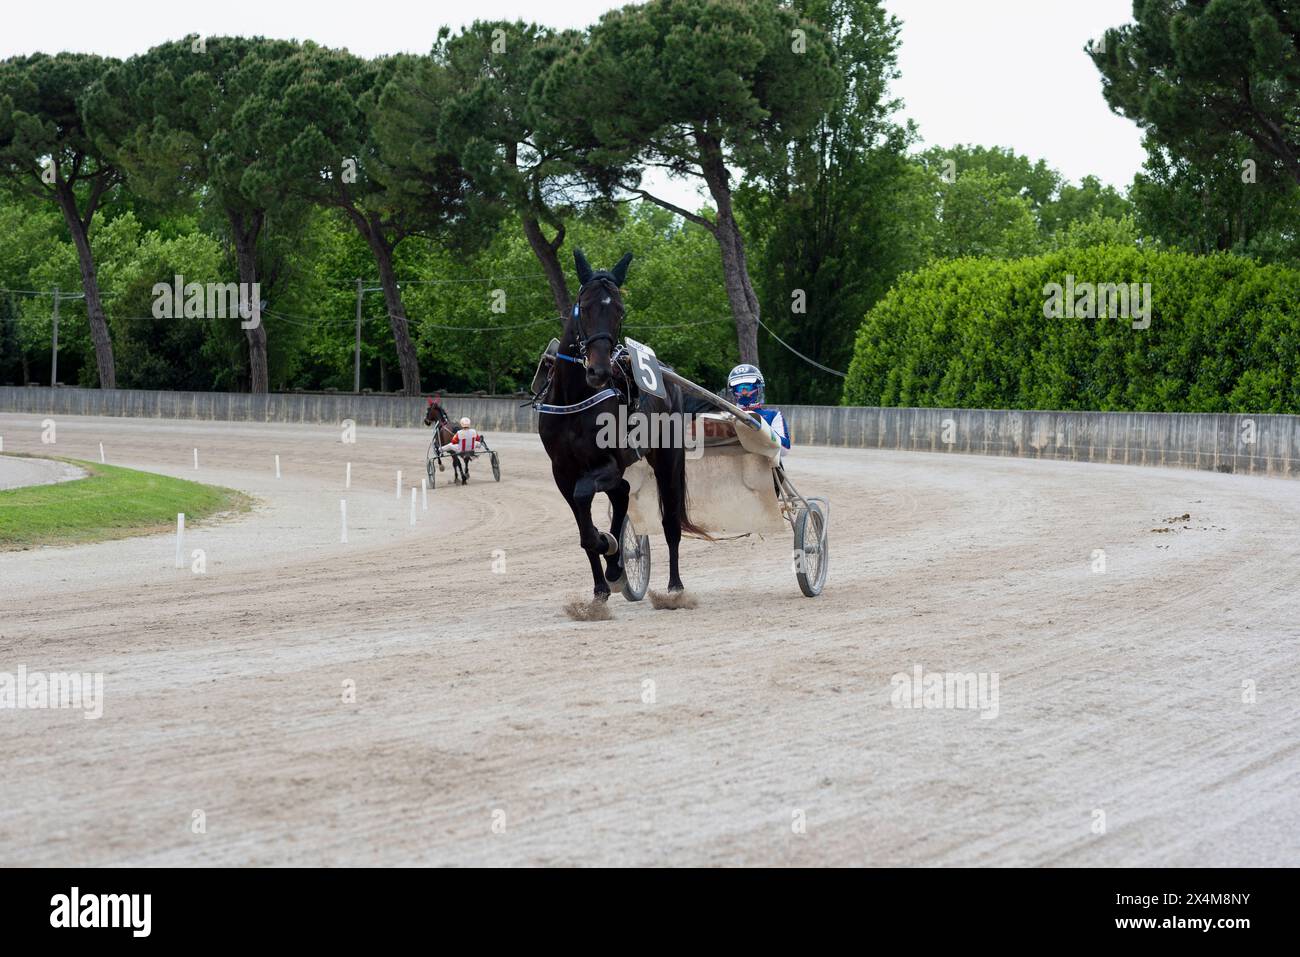 Scaldarsi prima della corsa al trotto, cavallo e fantino sul fangoso in azione sulla pista di sabbia dell'Ippodromo di Padova, Italia. Foto Stock